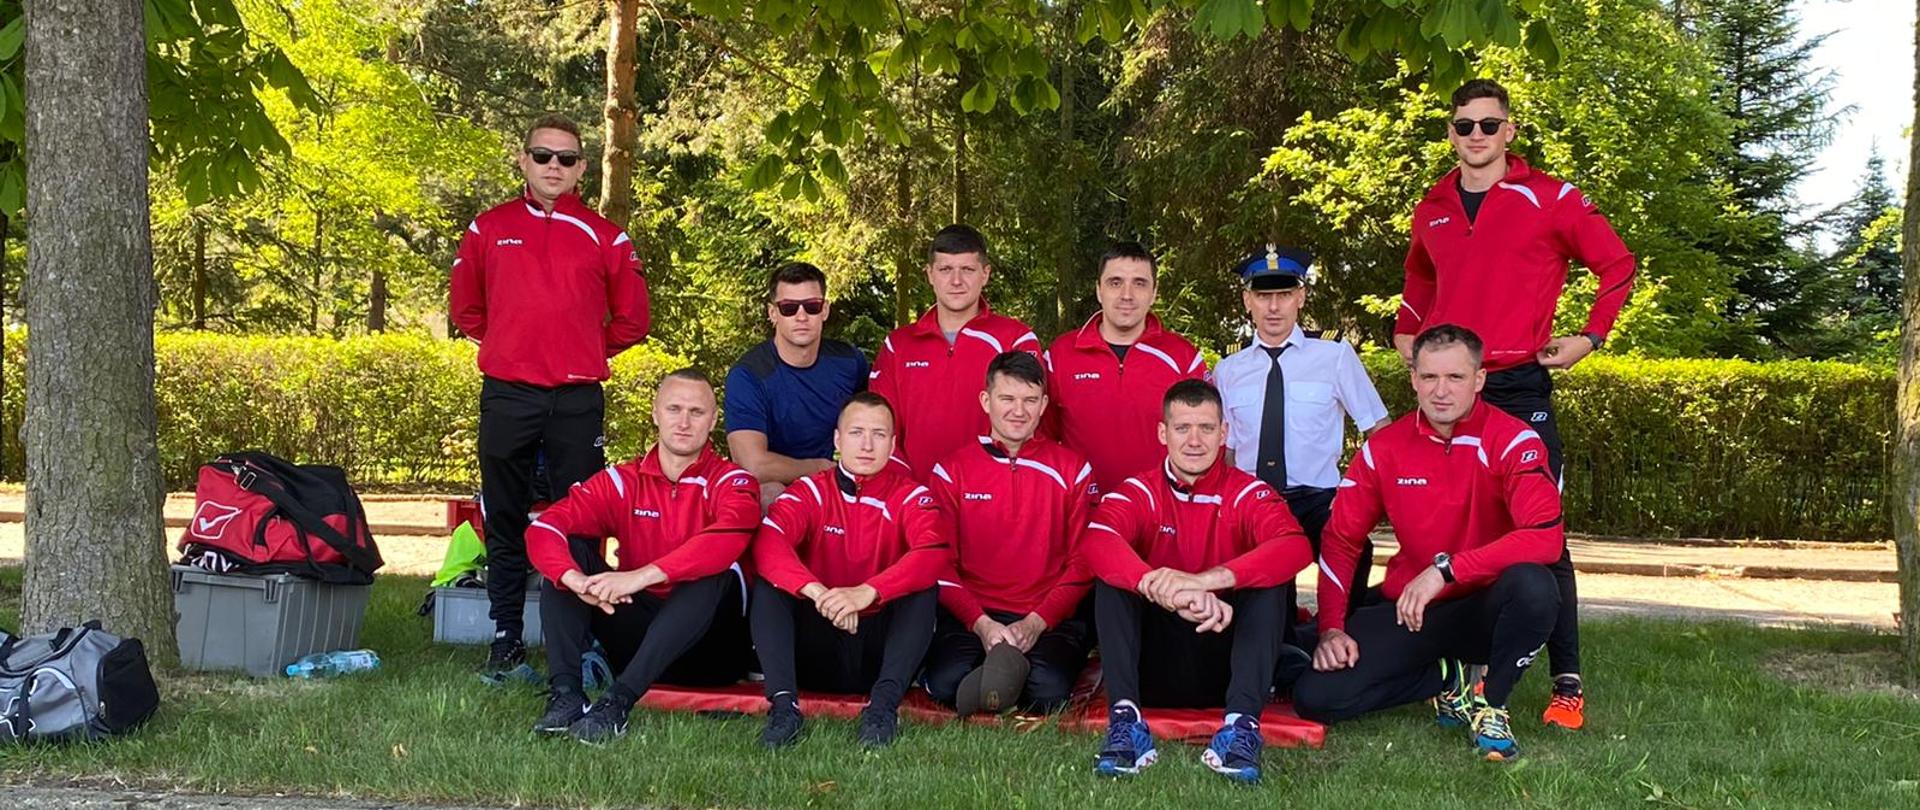 Mistrzostwa Polski w sportach pożarniczych